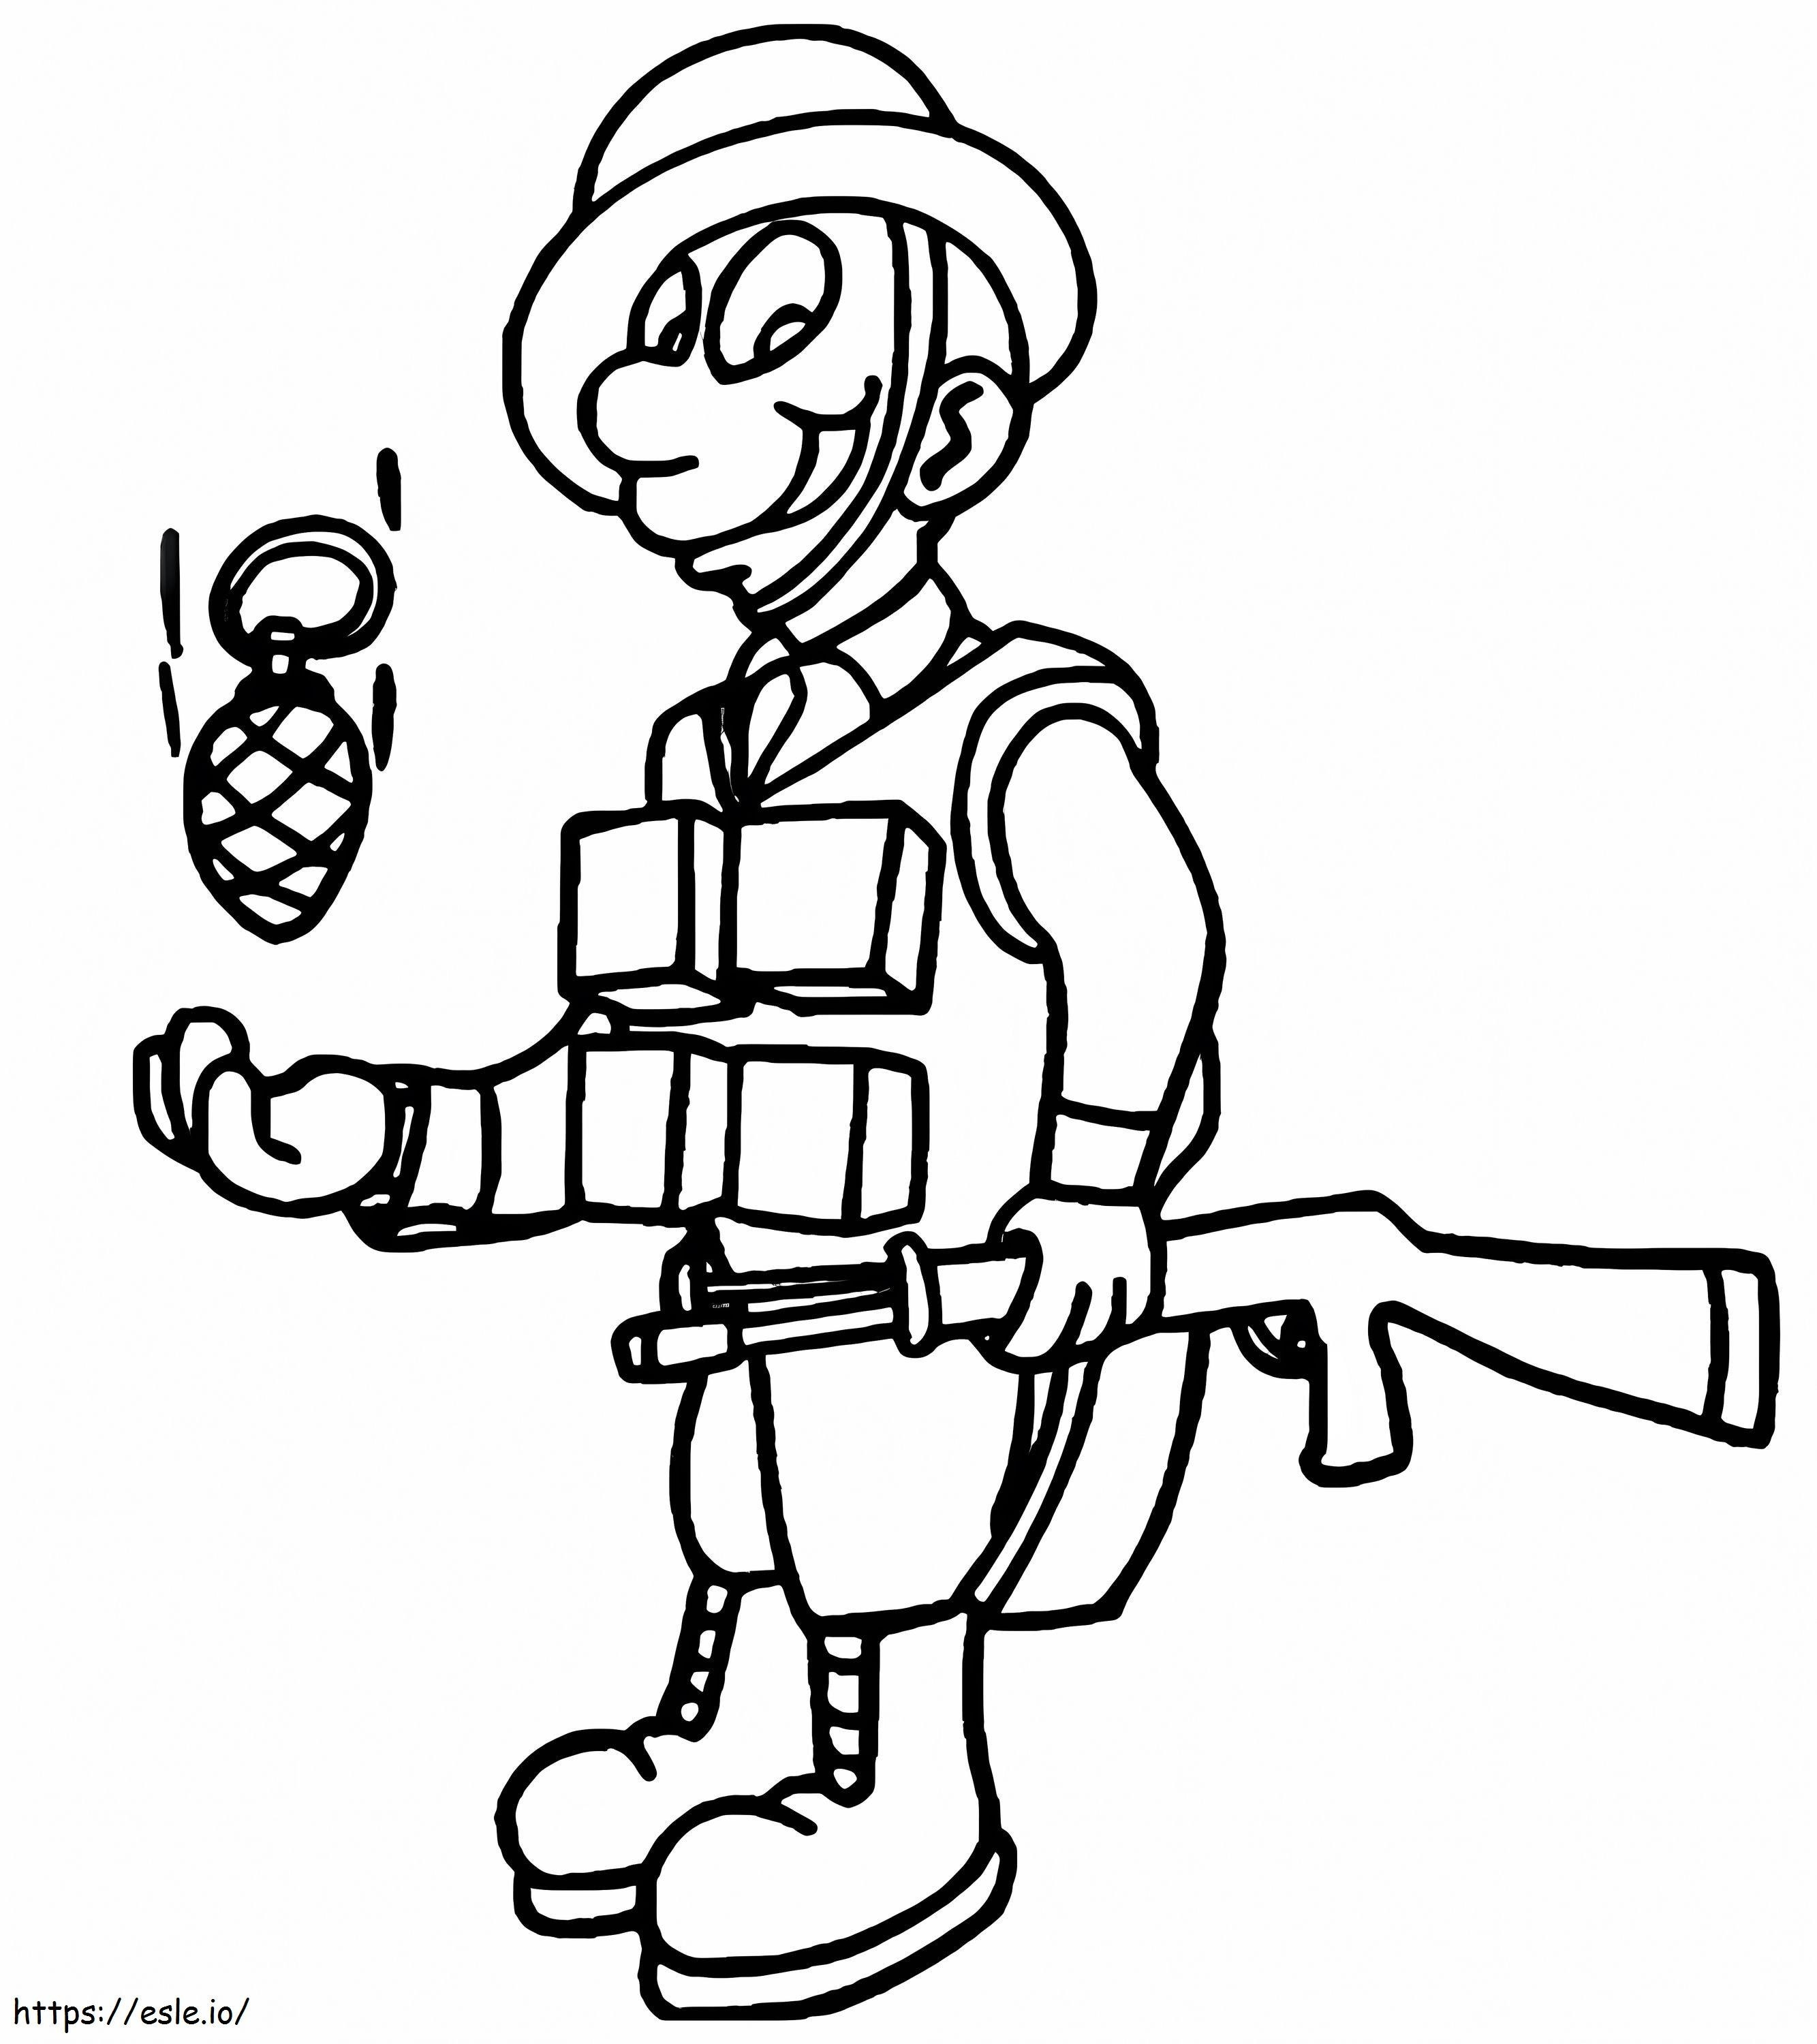 Soldado sosteniendo pistola para colorear